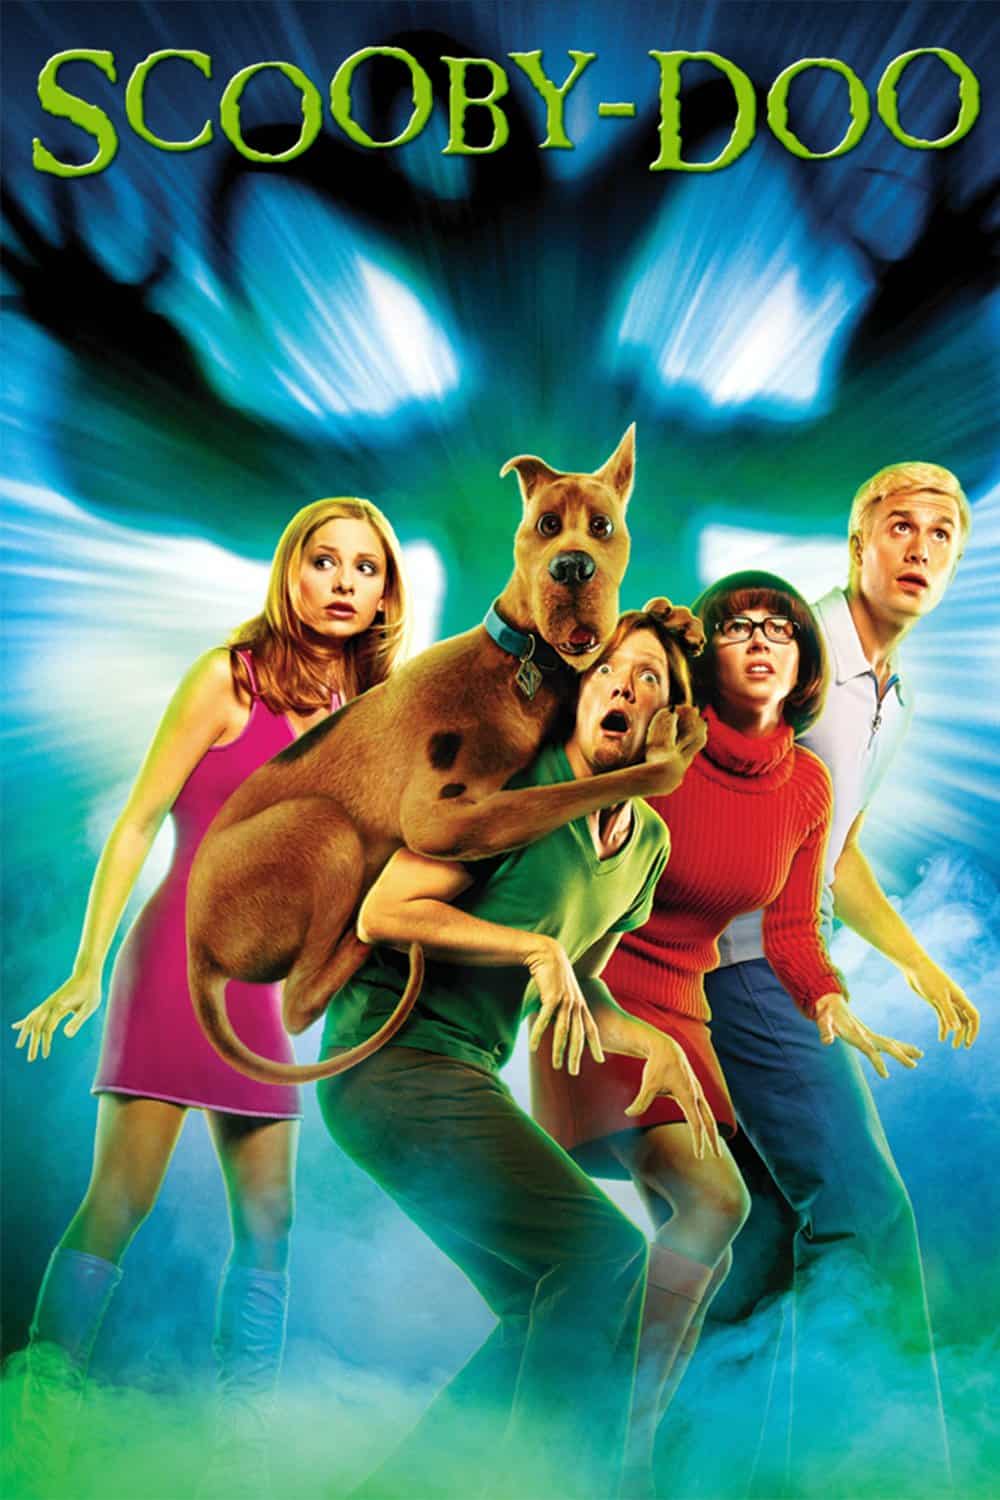 Scooby-Doo, 2002 